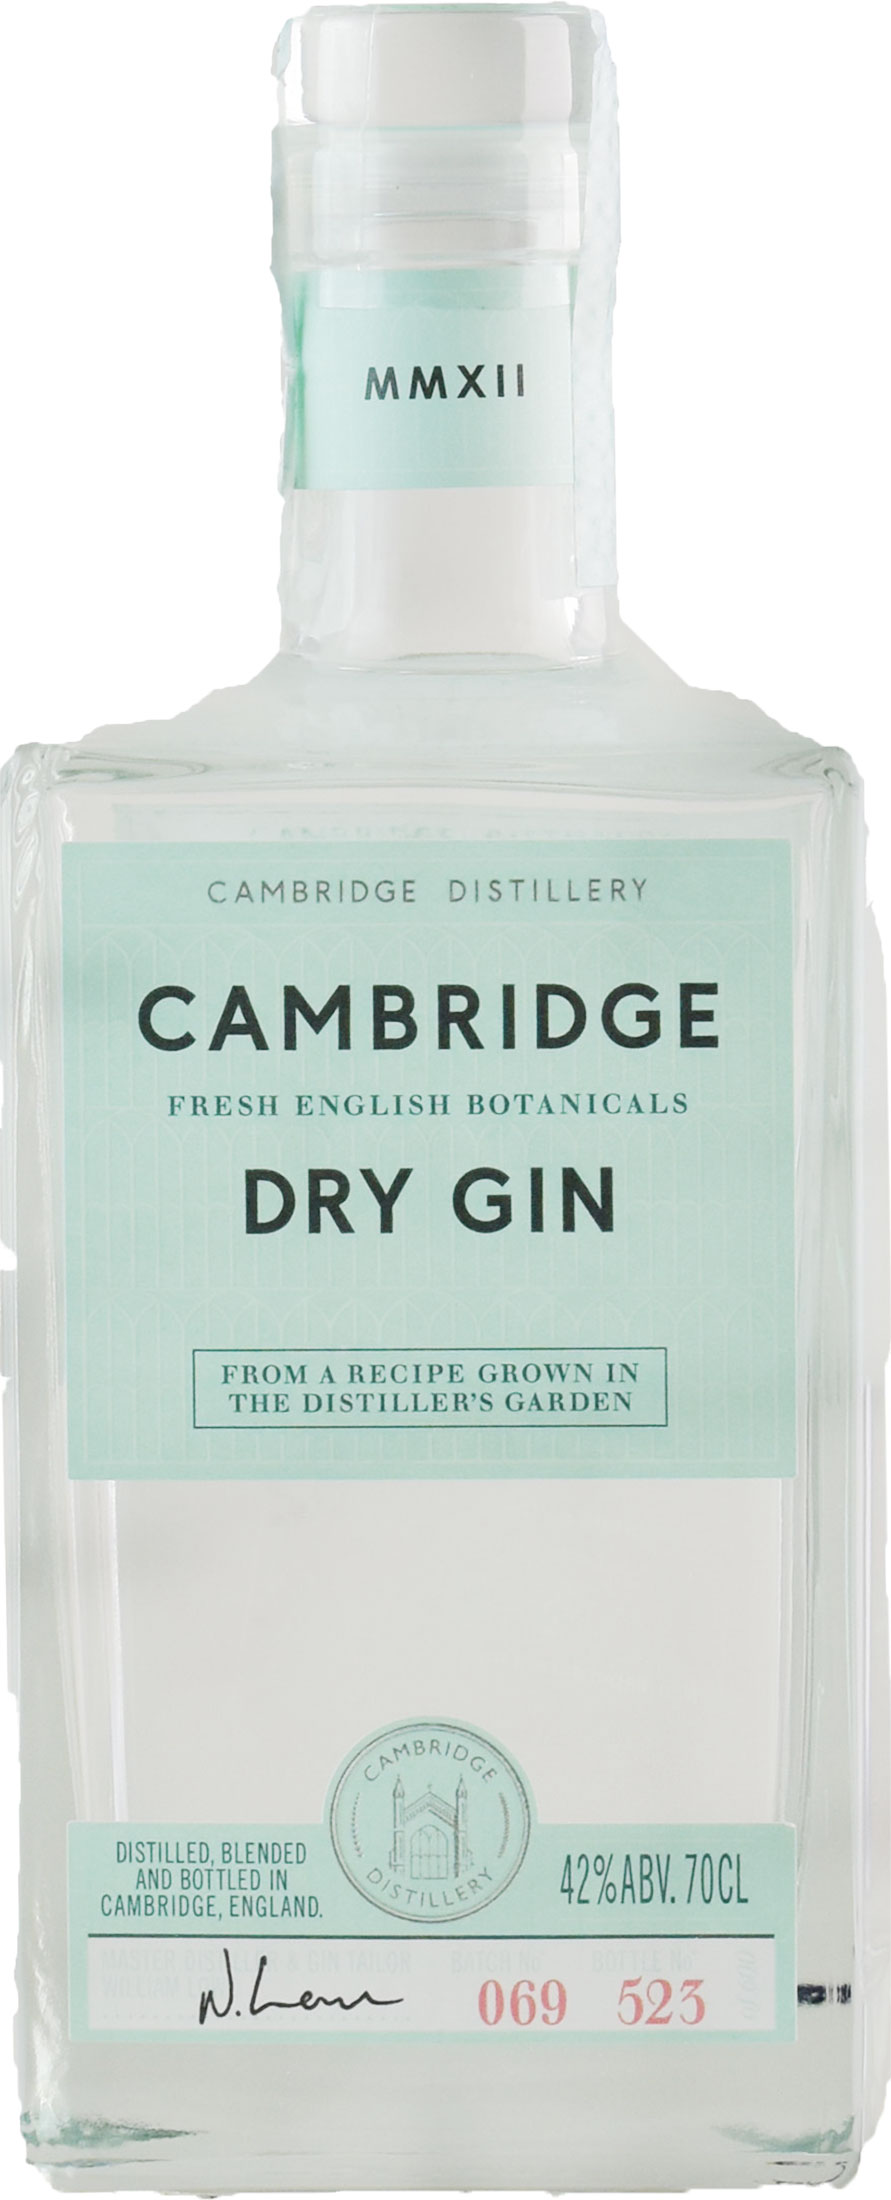 Cambridge Distillery Cabridge Dry Gin 0.70L